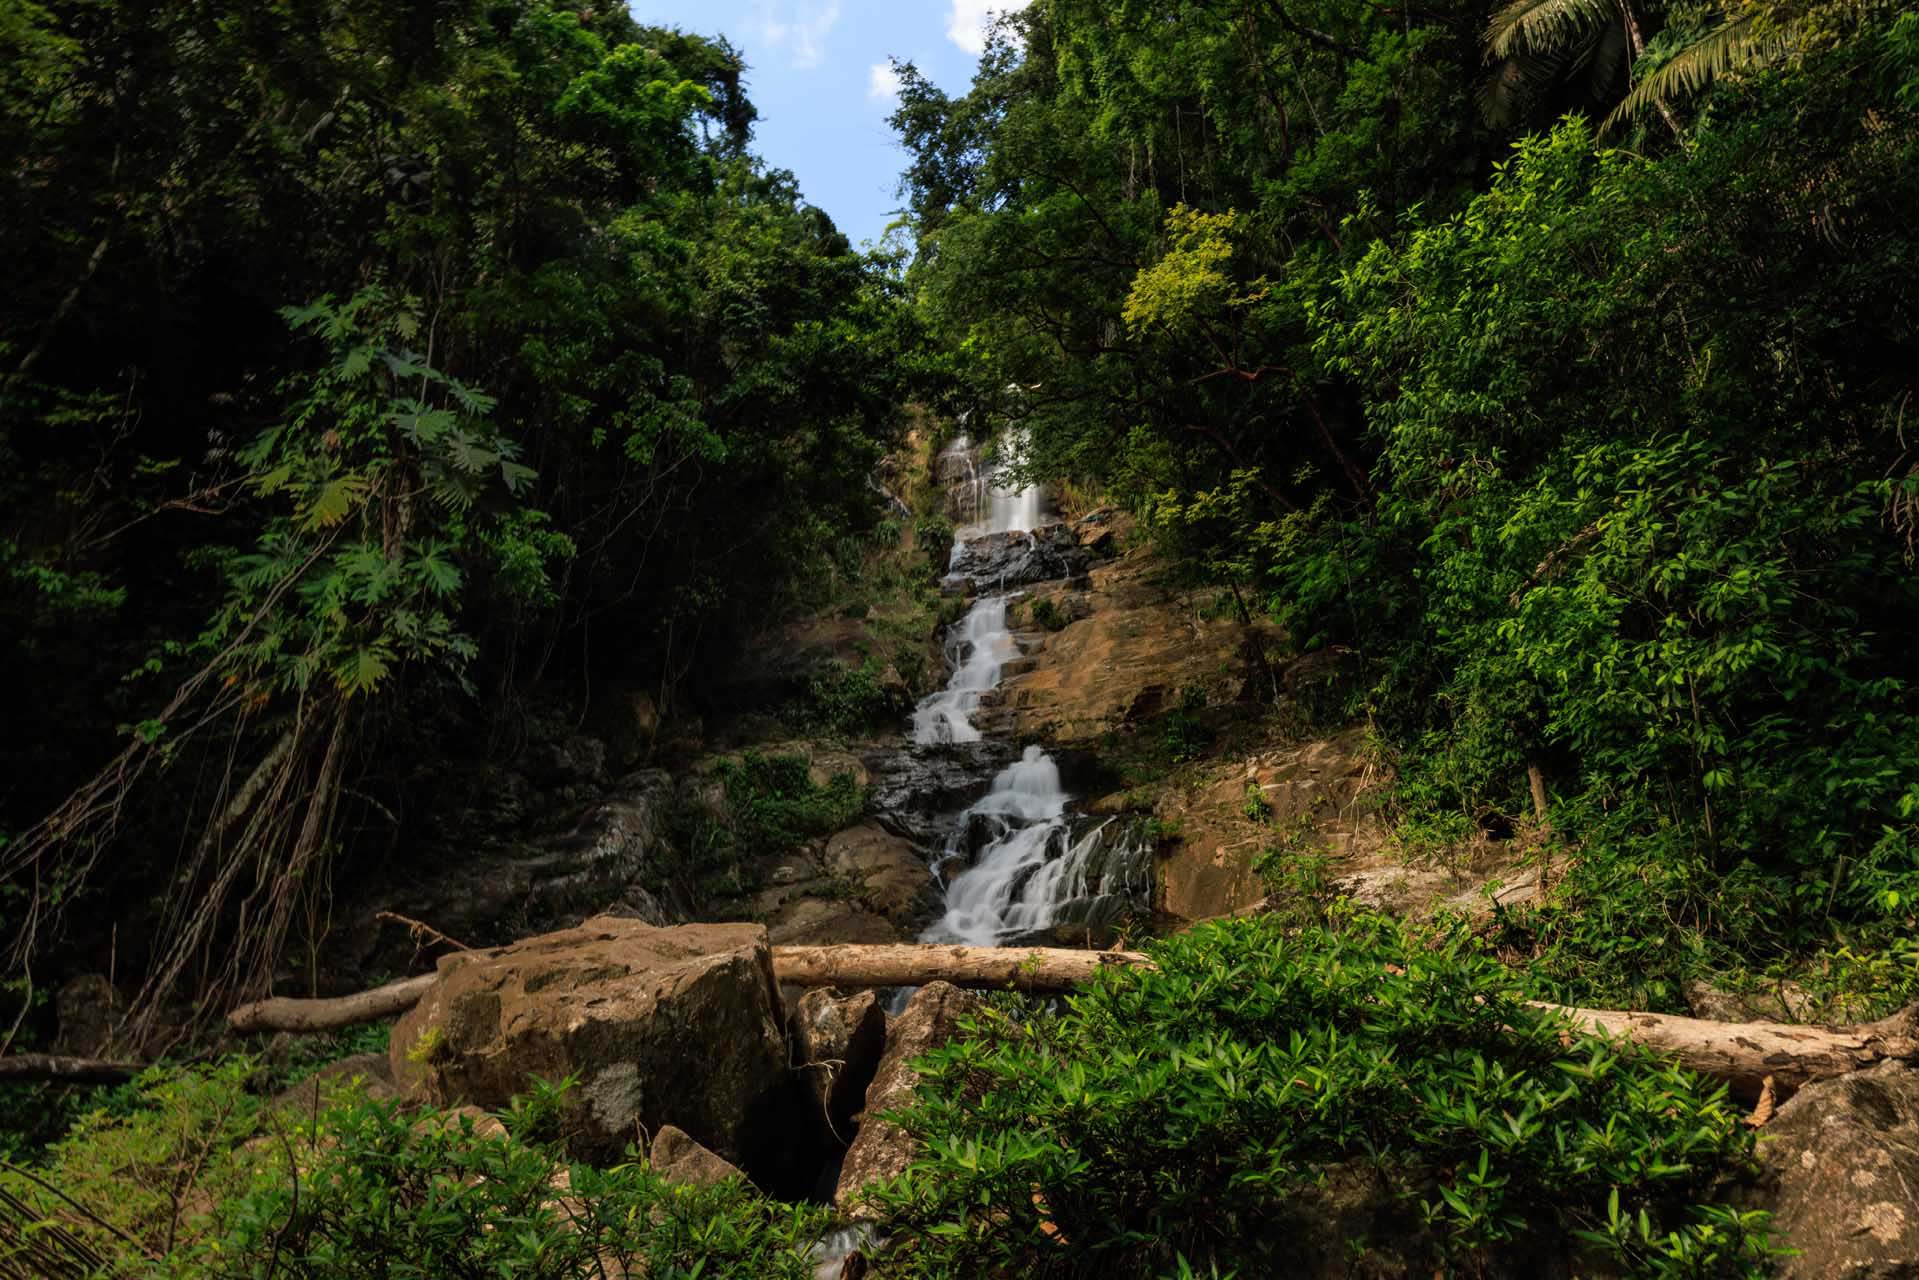 شلال طويل محاط بغابات استوائية مطيرة في منتزه ماي فلاور بوكاوينا الوطني في بليز